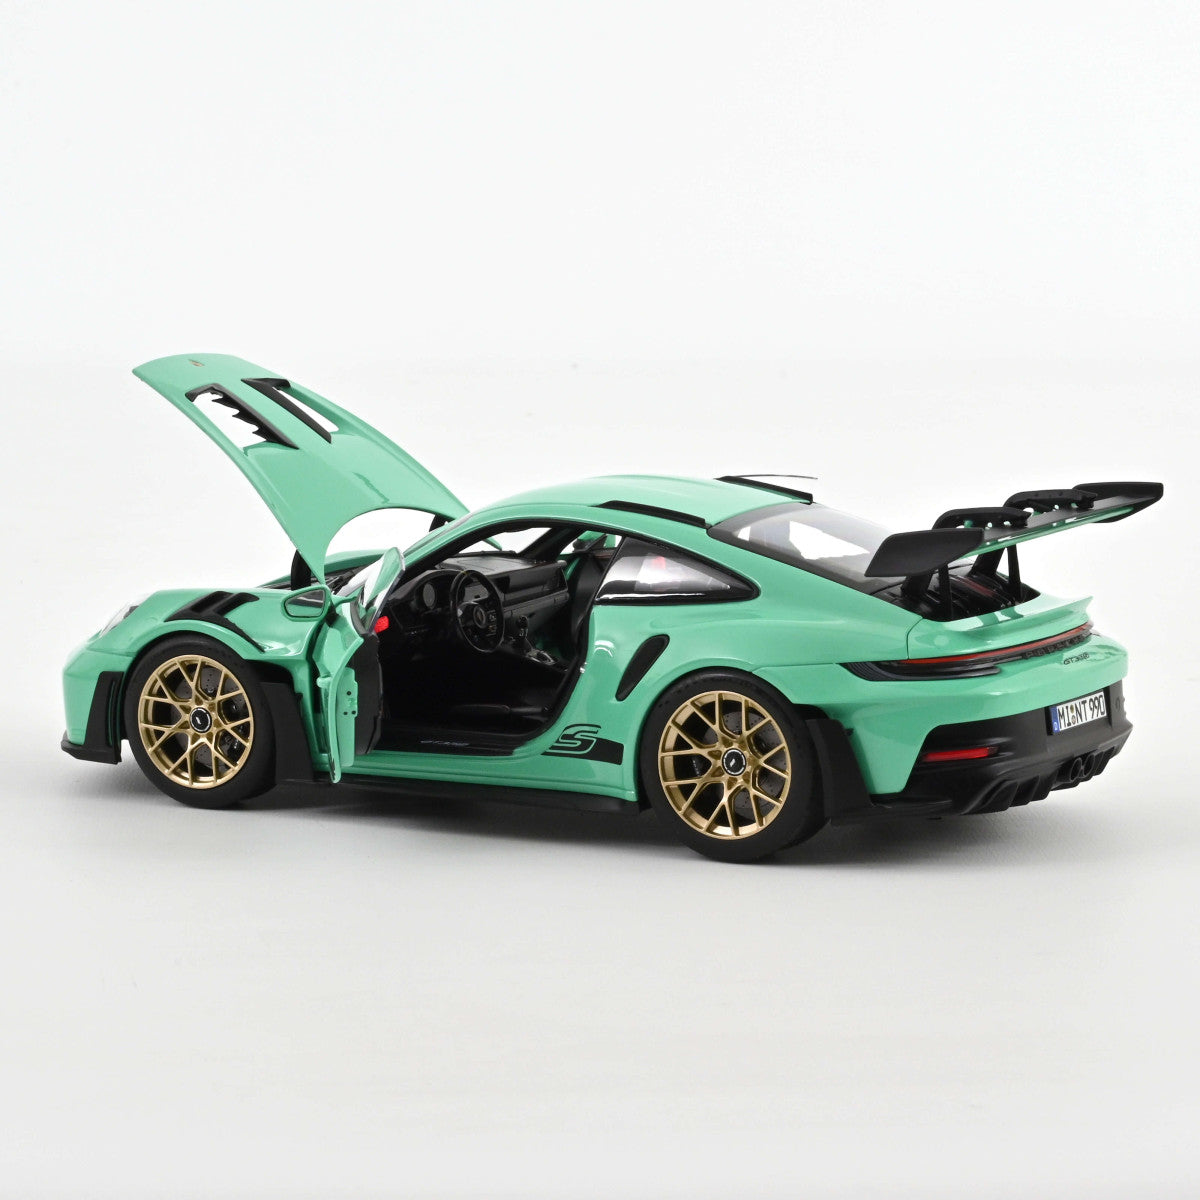 Norev Porsche 911 992 GT3 RS Mint Green 1:18